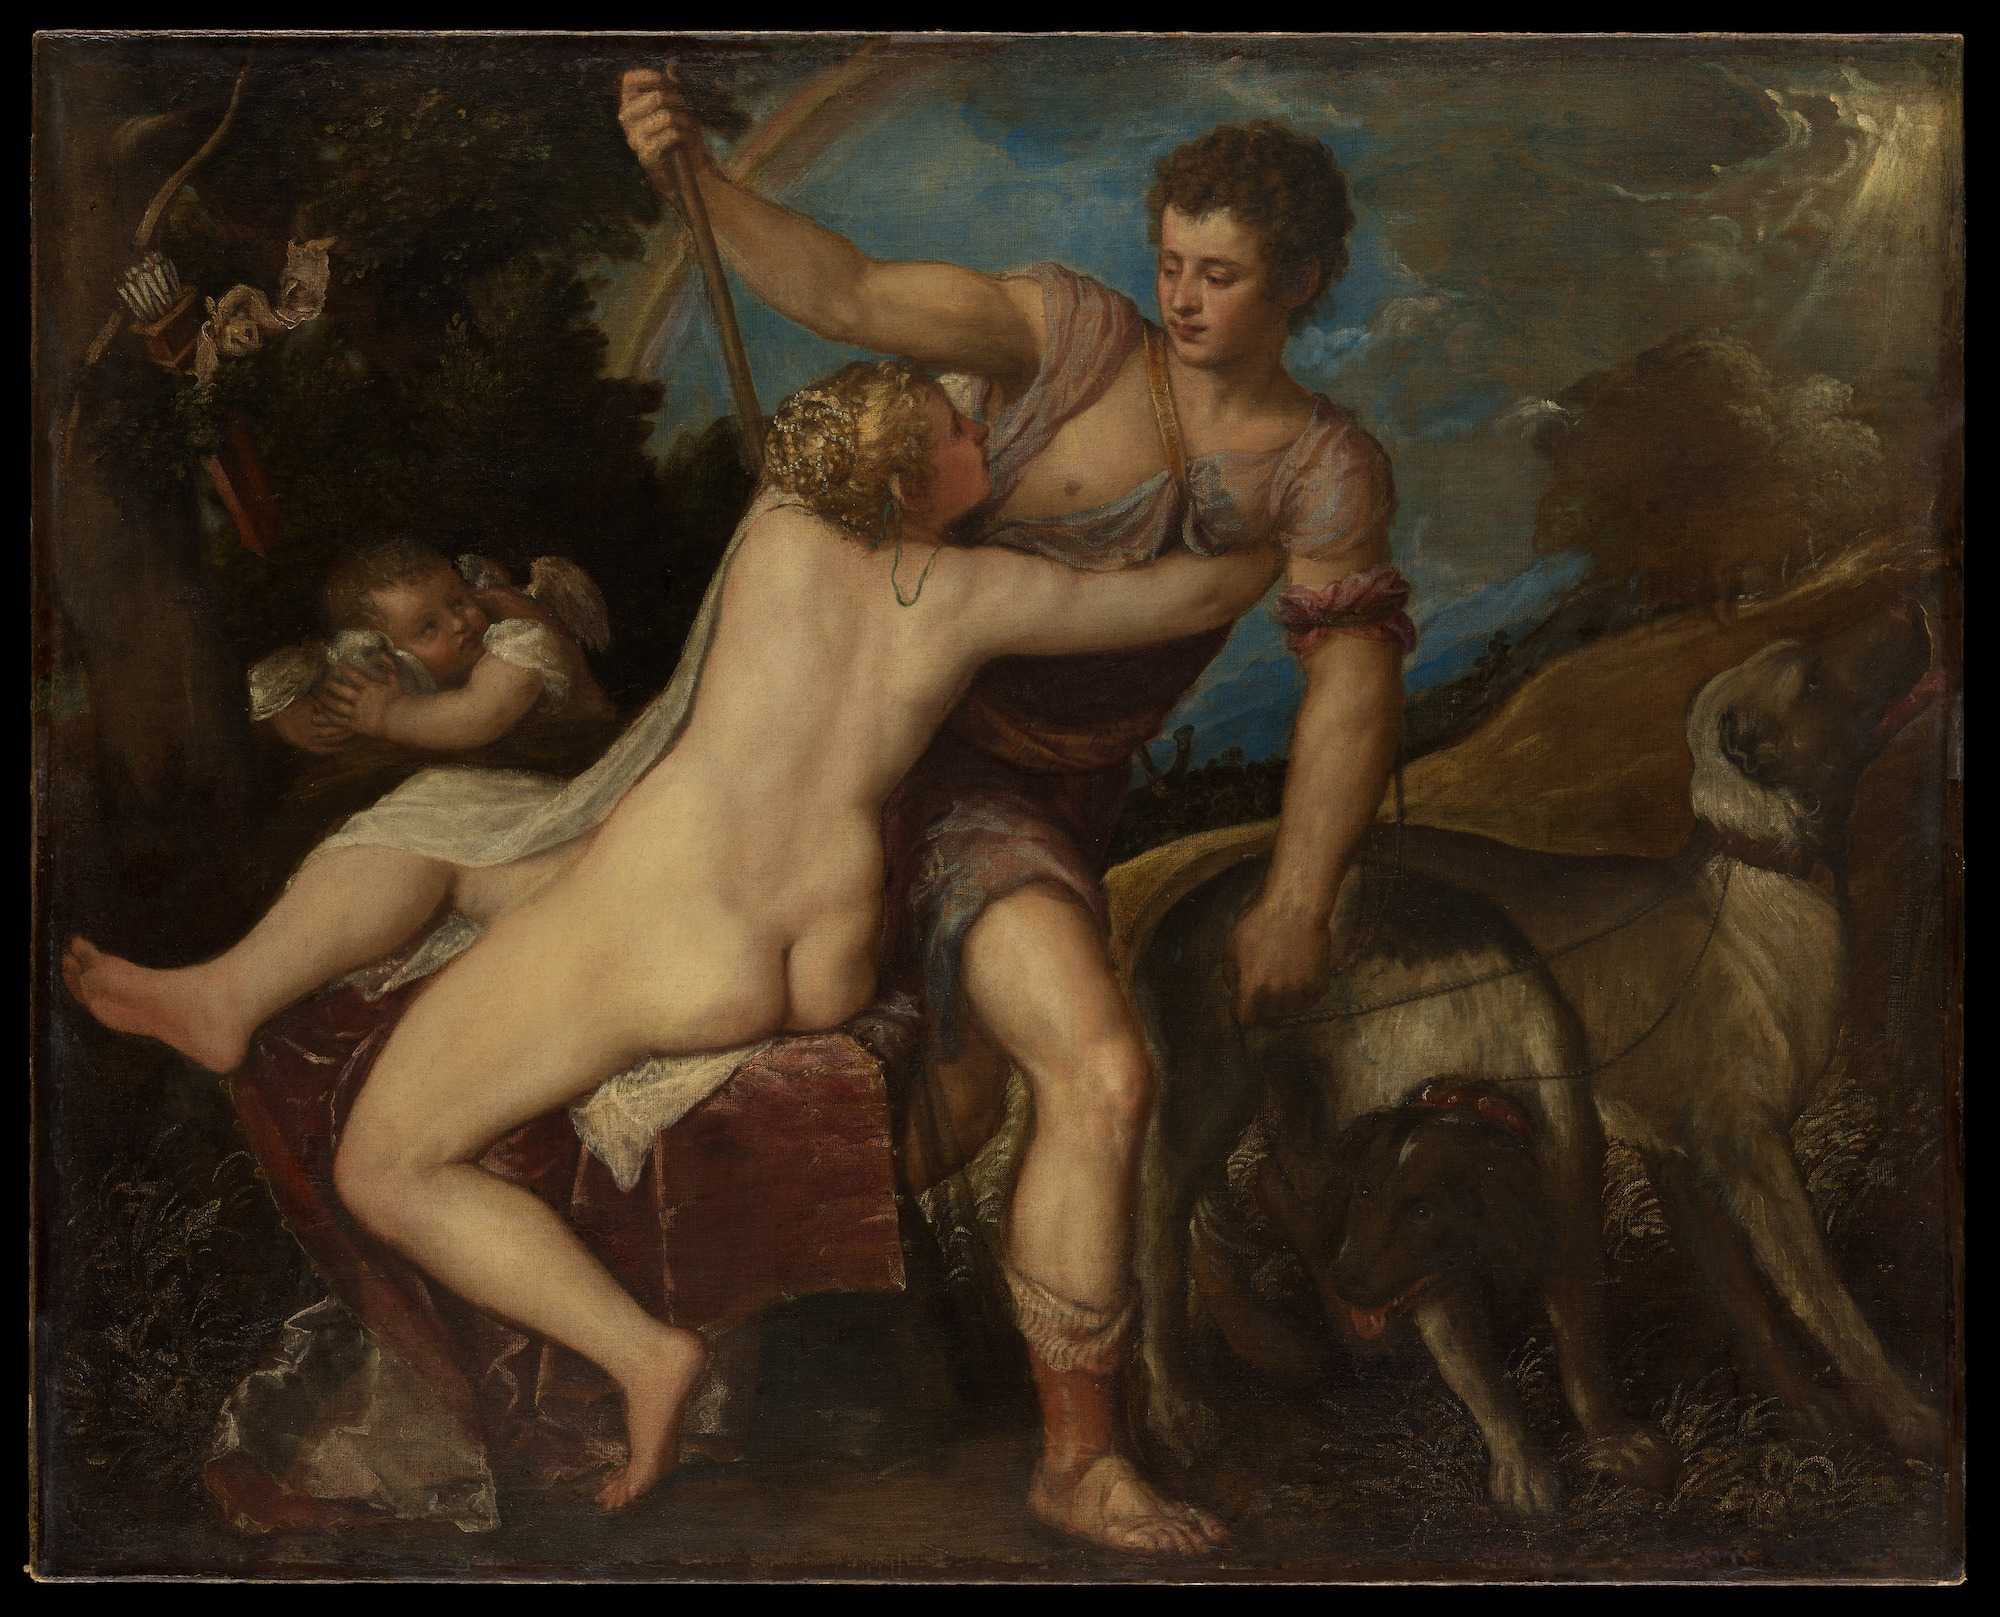 Titian'ın Venüs ve Adonis tablosu, Ulusal Sanat Galerisi, Washington. "Farnese tipi" örneği.